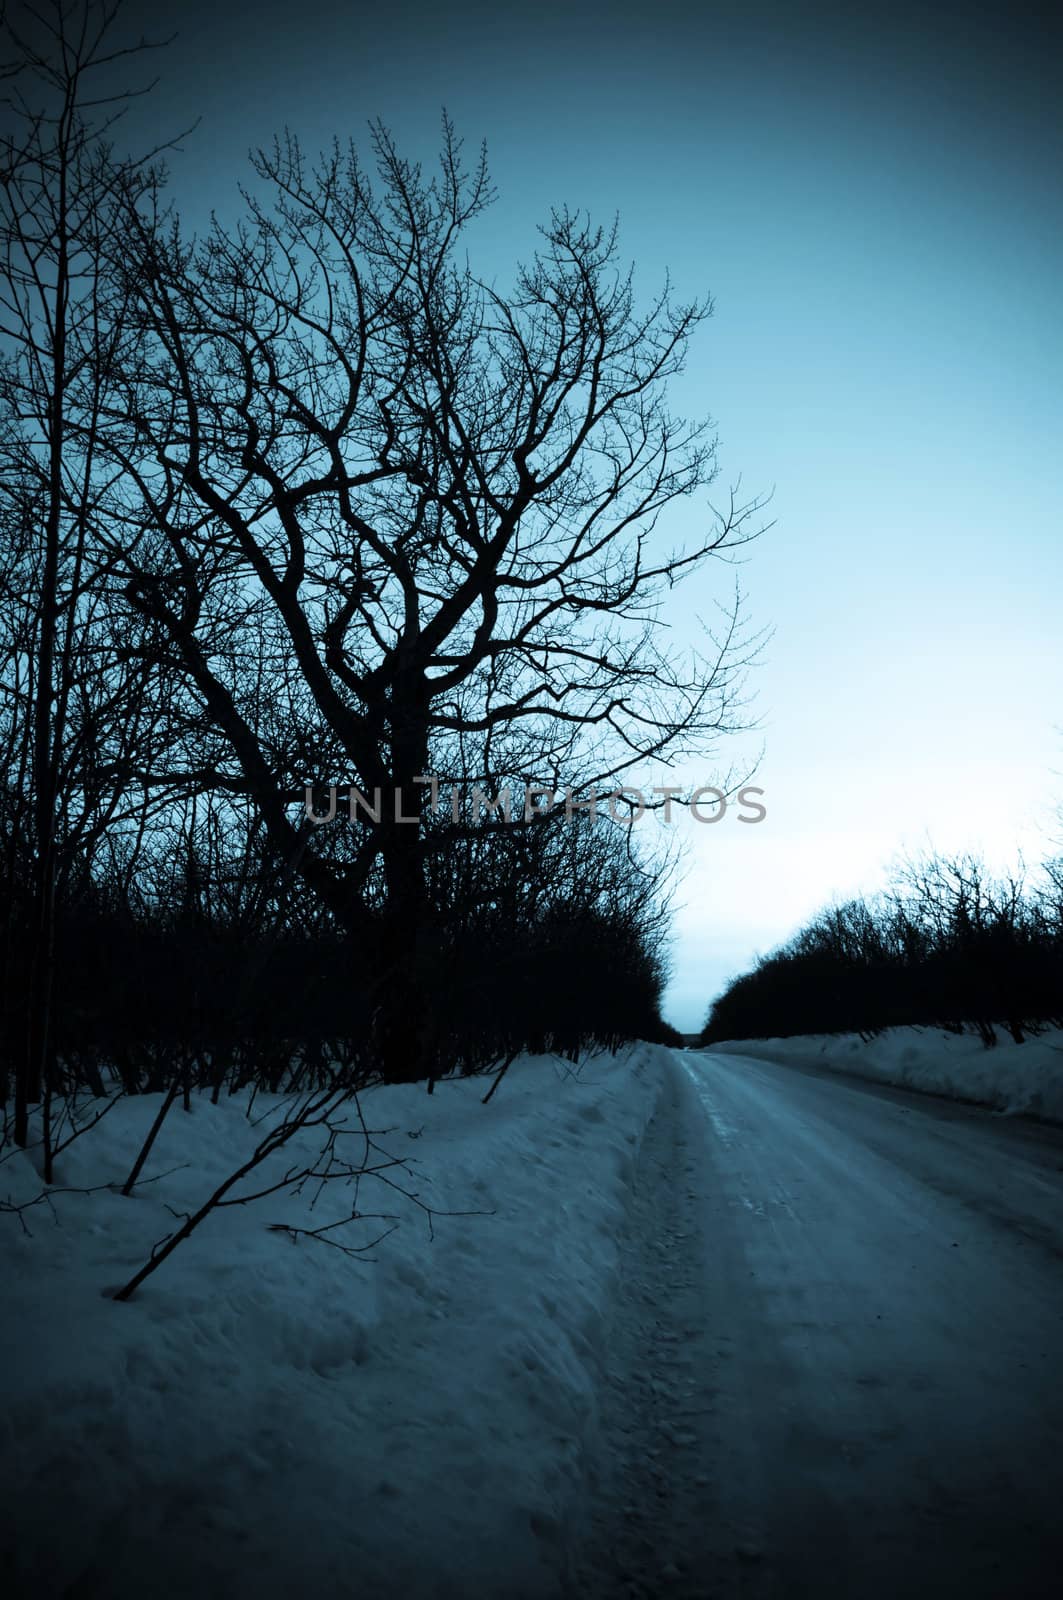 Winter Road by alena0509